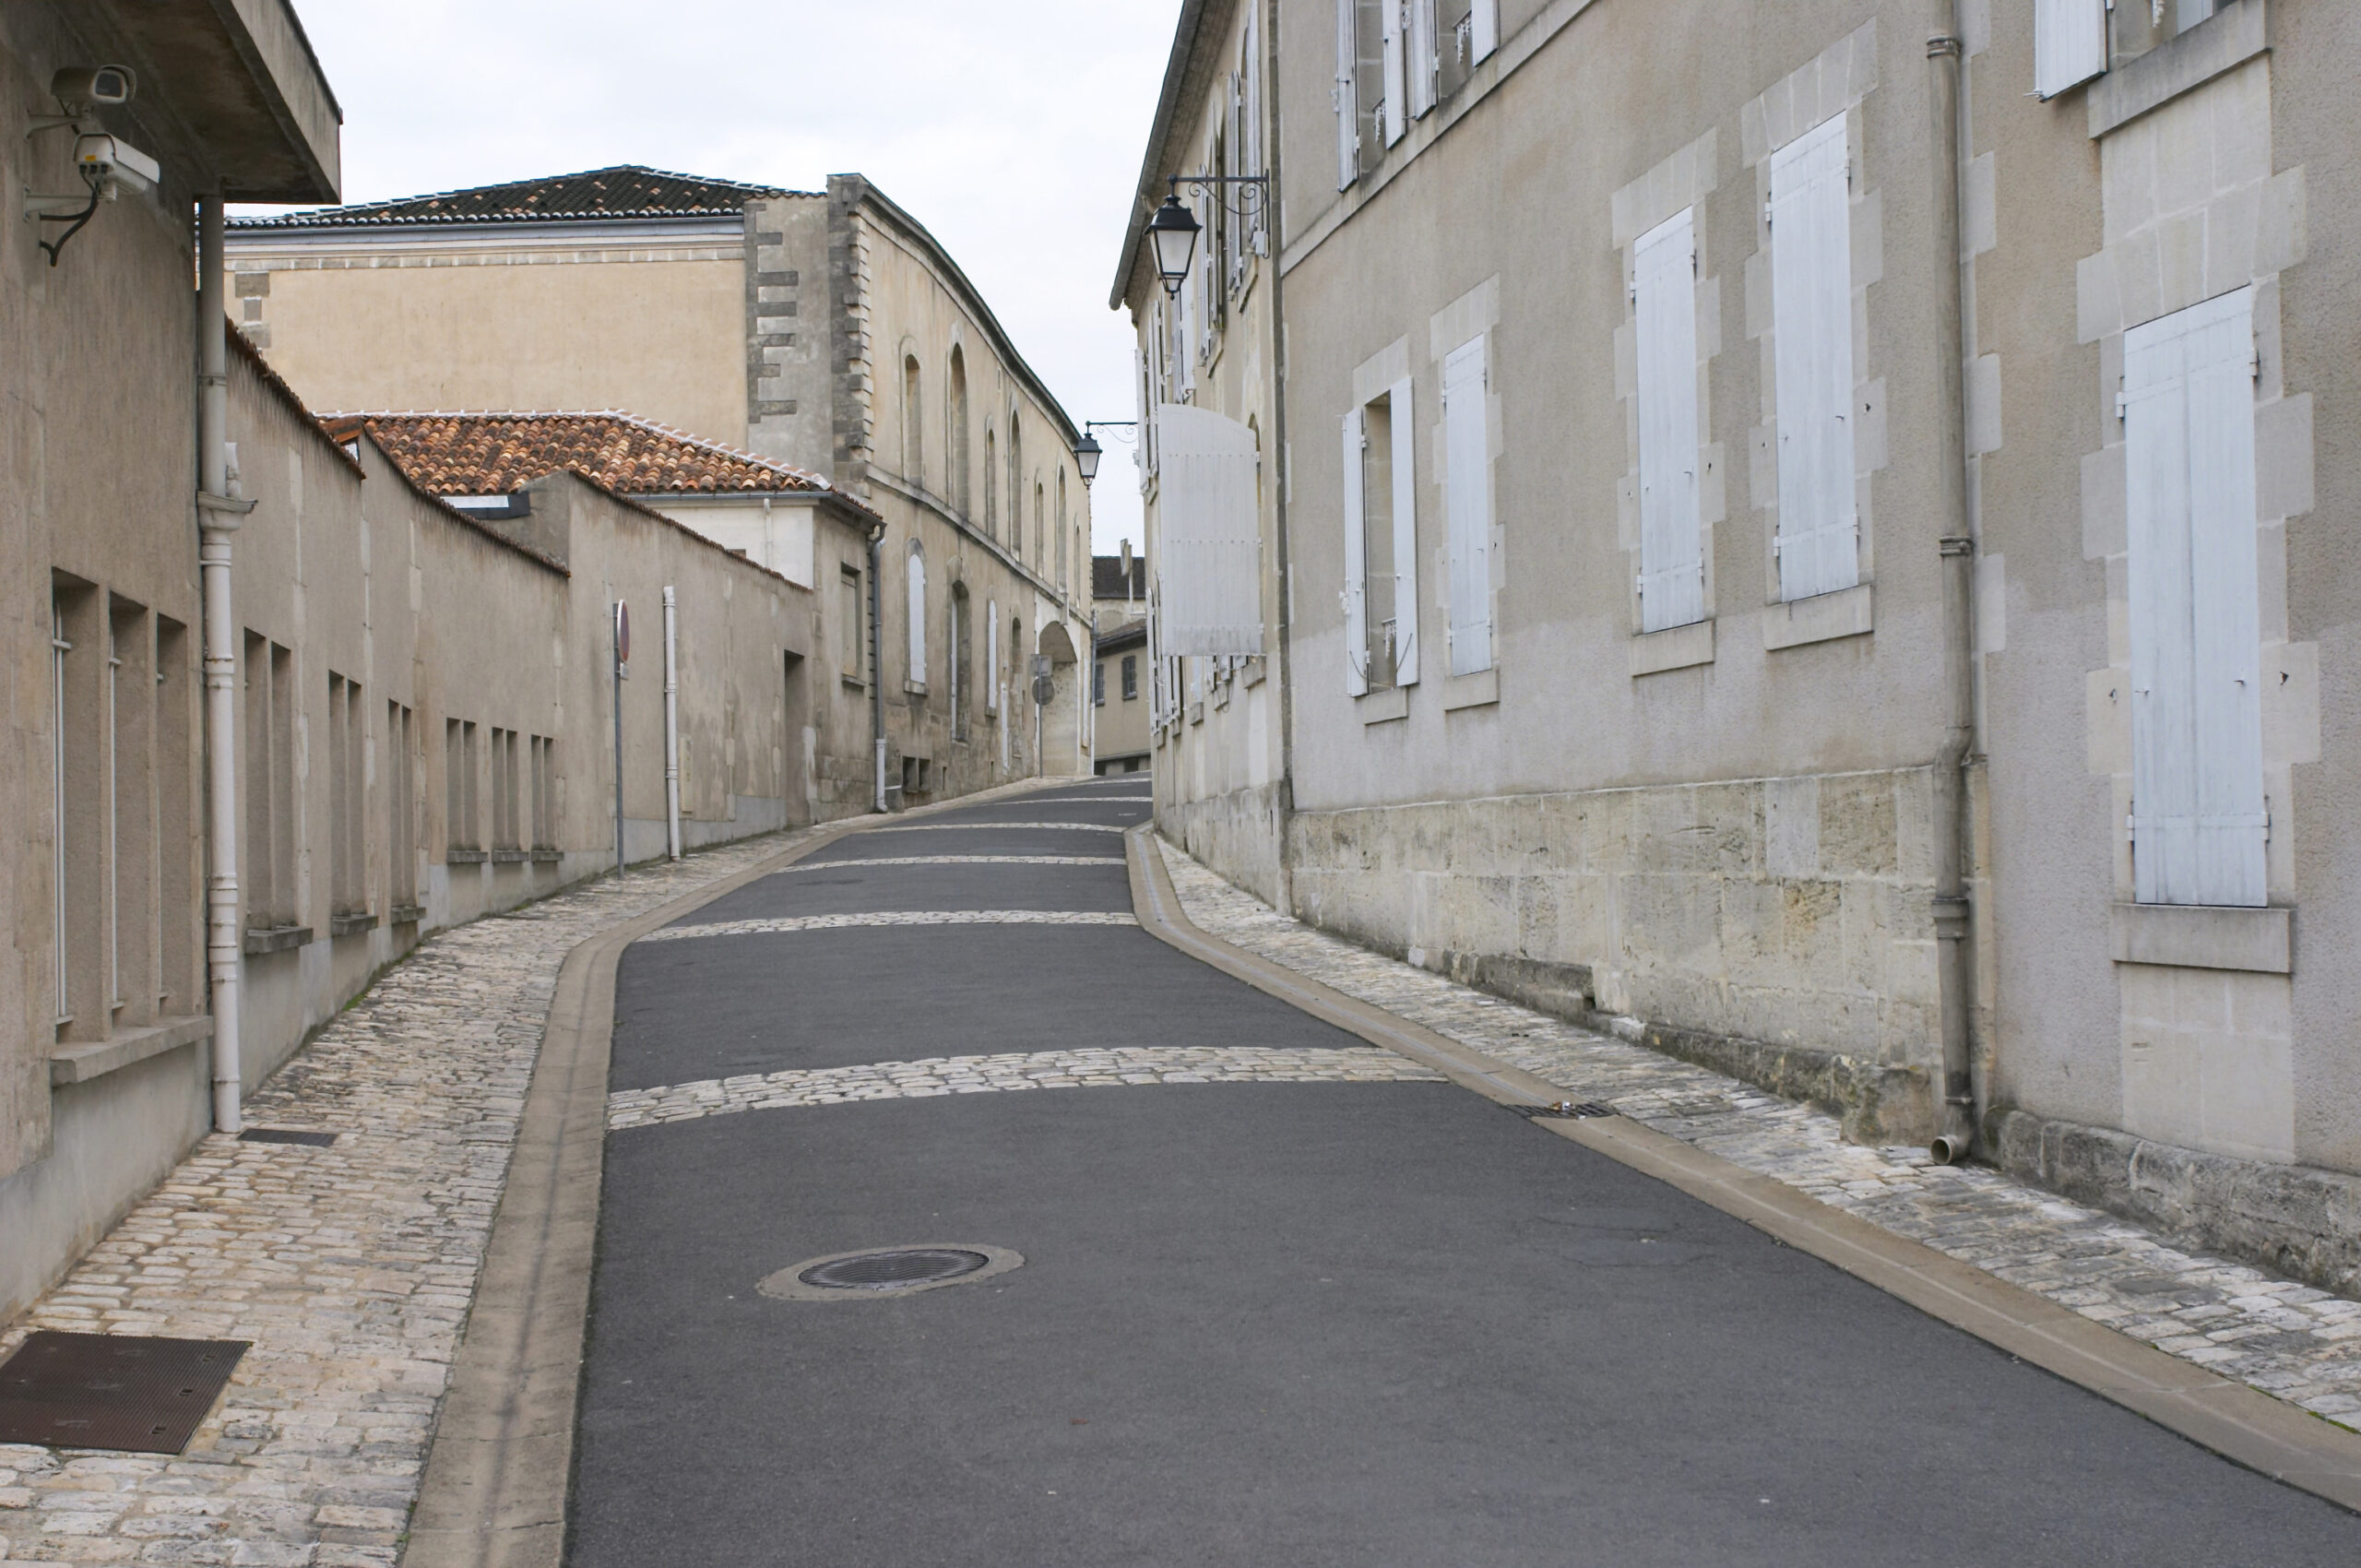 Streets of Cognac